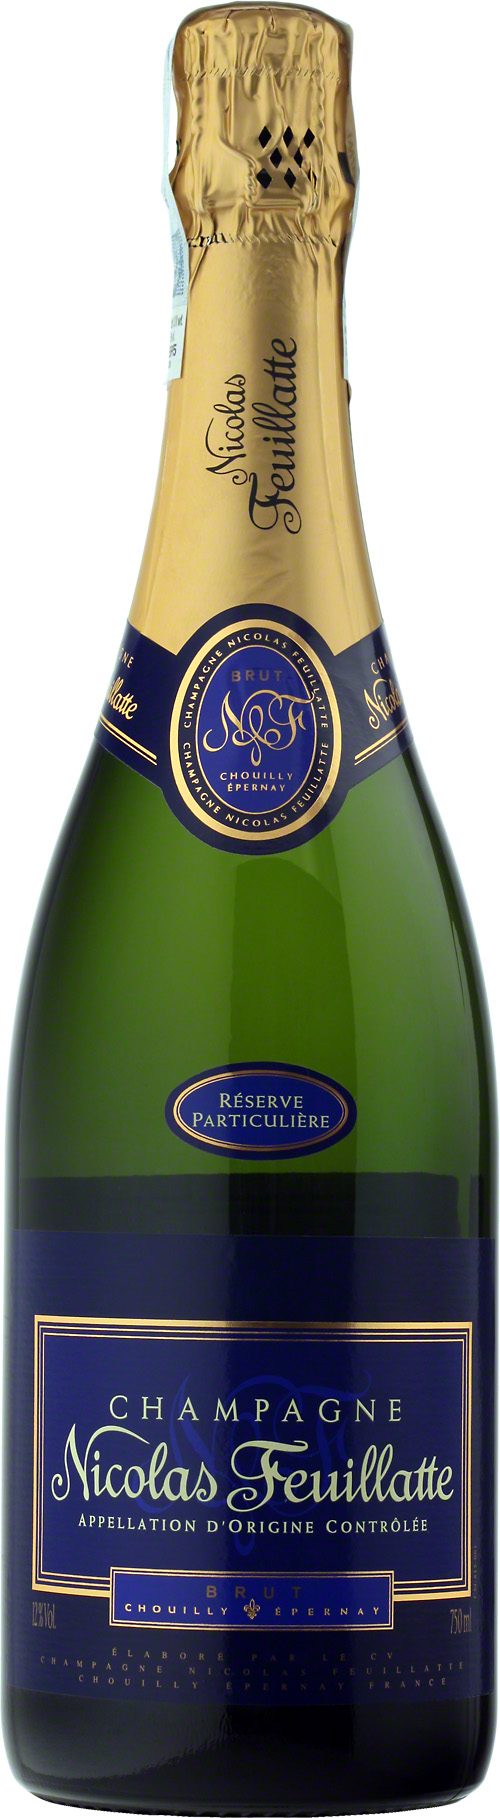 Шампанское reserve. La Reserve шампанское. Вино ПАРТИКУЛЬЕР. Nicolas Feuillatte, Brut Reserve particuliere 2016. Николя Фейят шампанское имиджи.